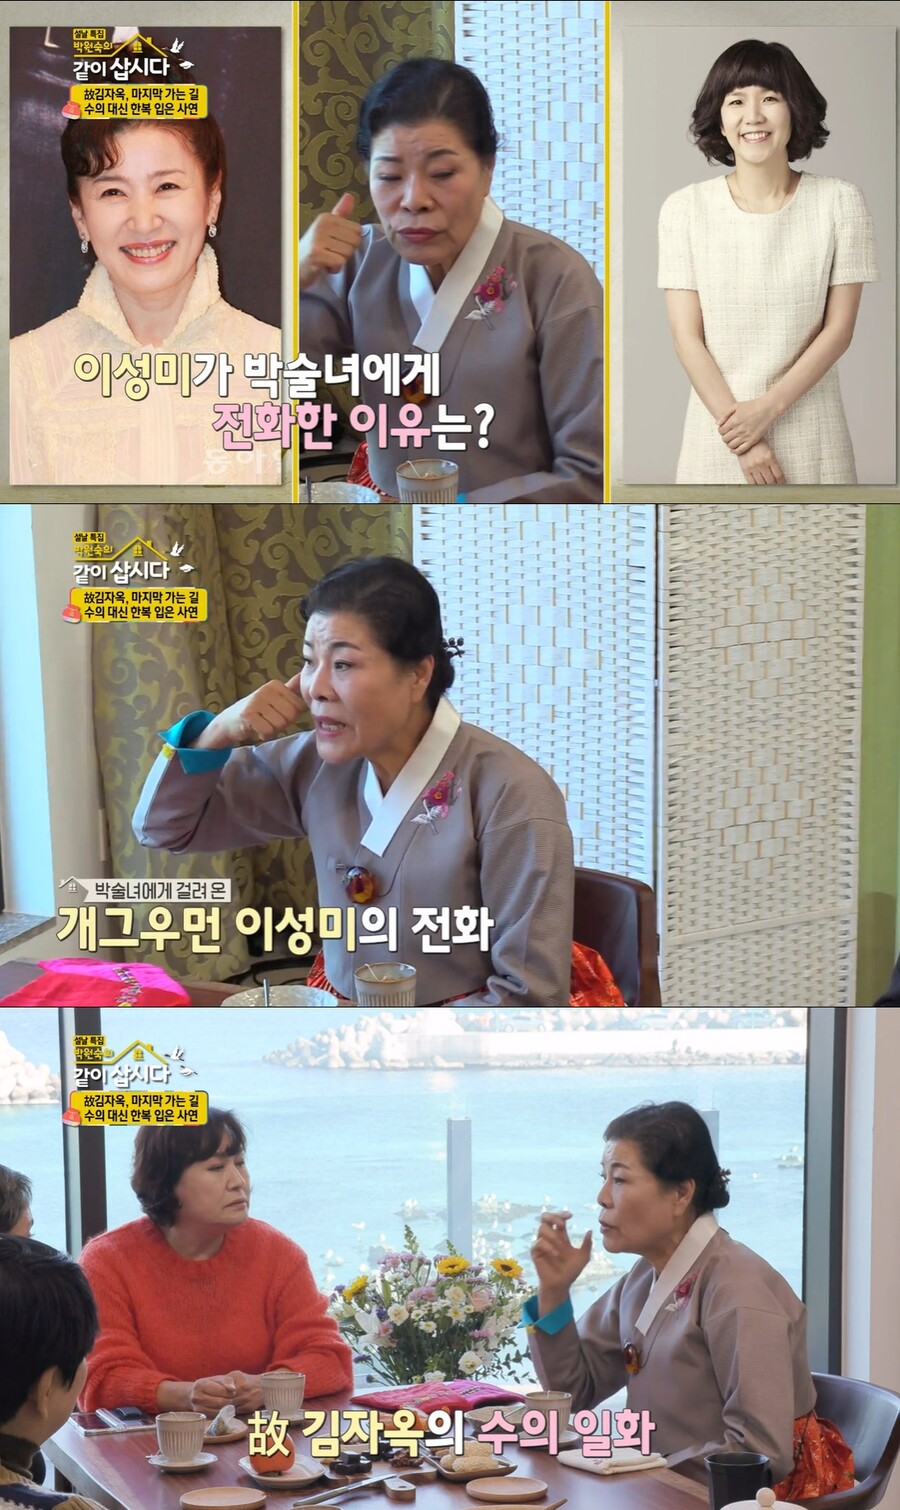 ▲ 출처| KBS2 예능프로그램 '박원숙의 같이 삽시다' 방송화면 캡처.